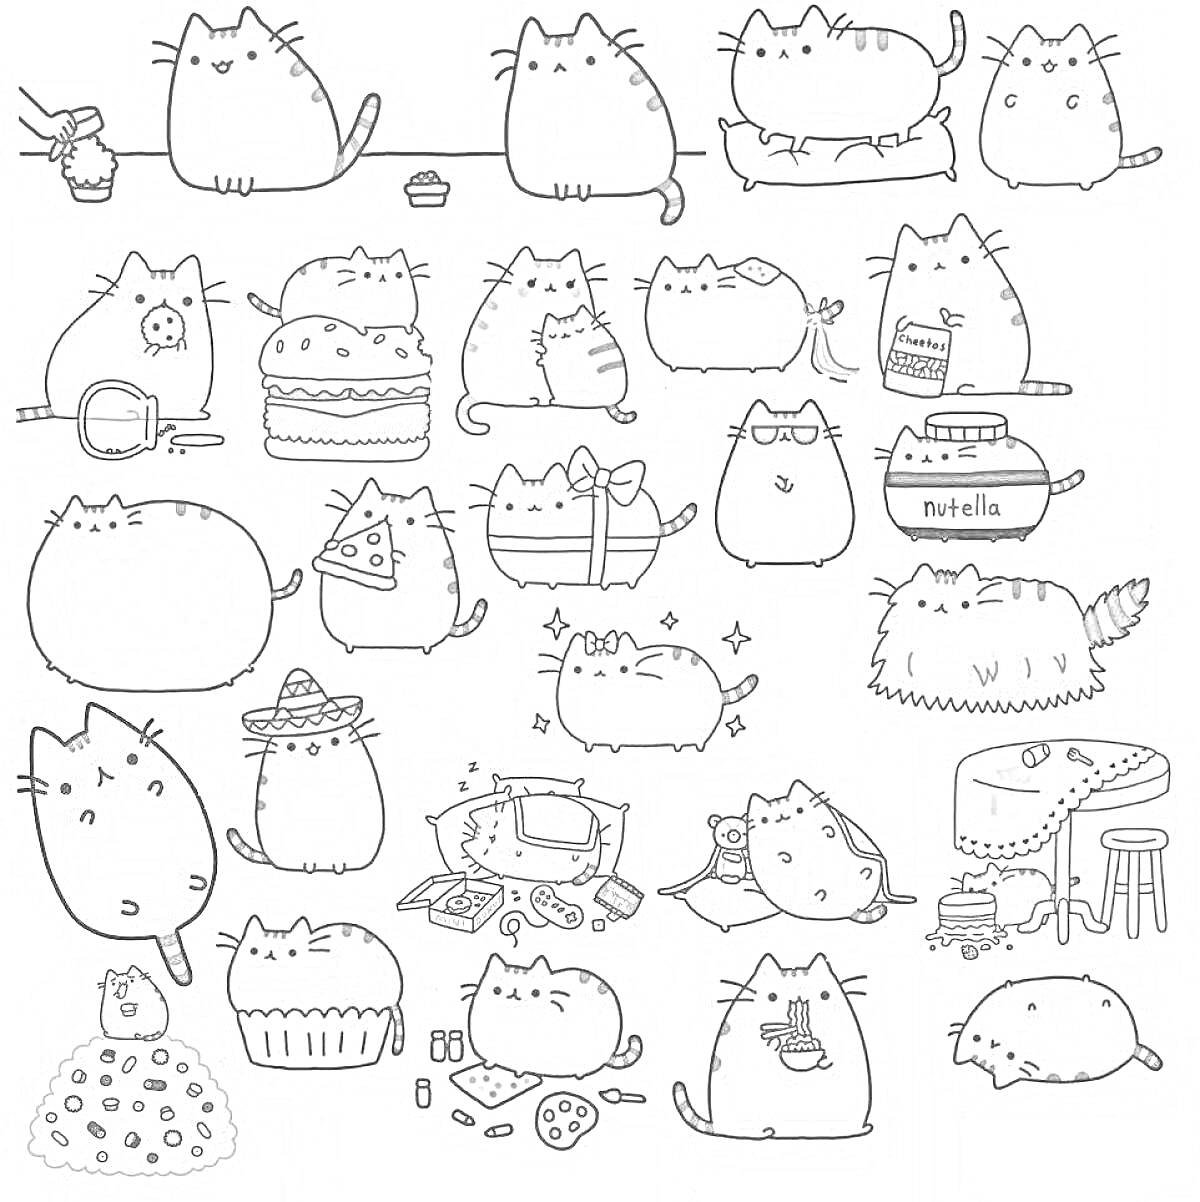 Кошки Пушины в различных ситуациях - кошка ловит рыбу, кошка с пончиком, кошка с гамбургером, беременная кошка, кошки на подушках, кошка с очками и книгой, кошка с Nutella, кошка и мухомор, кошка с пиццей, кошка с бантиком, кошка с мечом, кошка с зеленой 